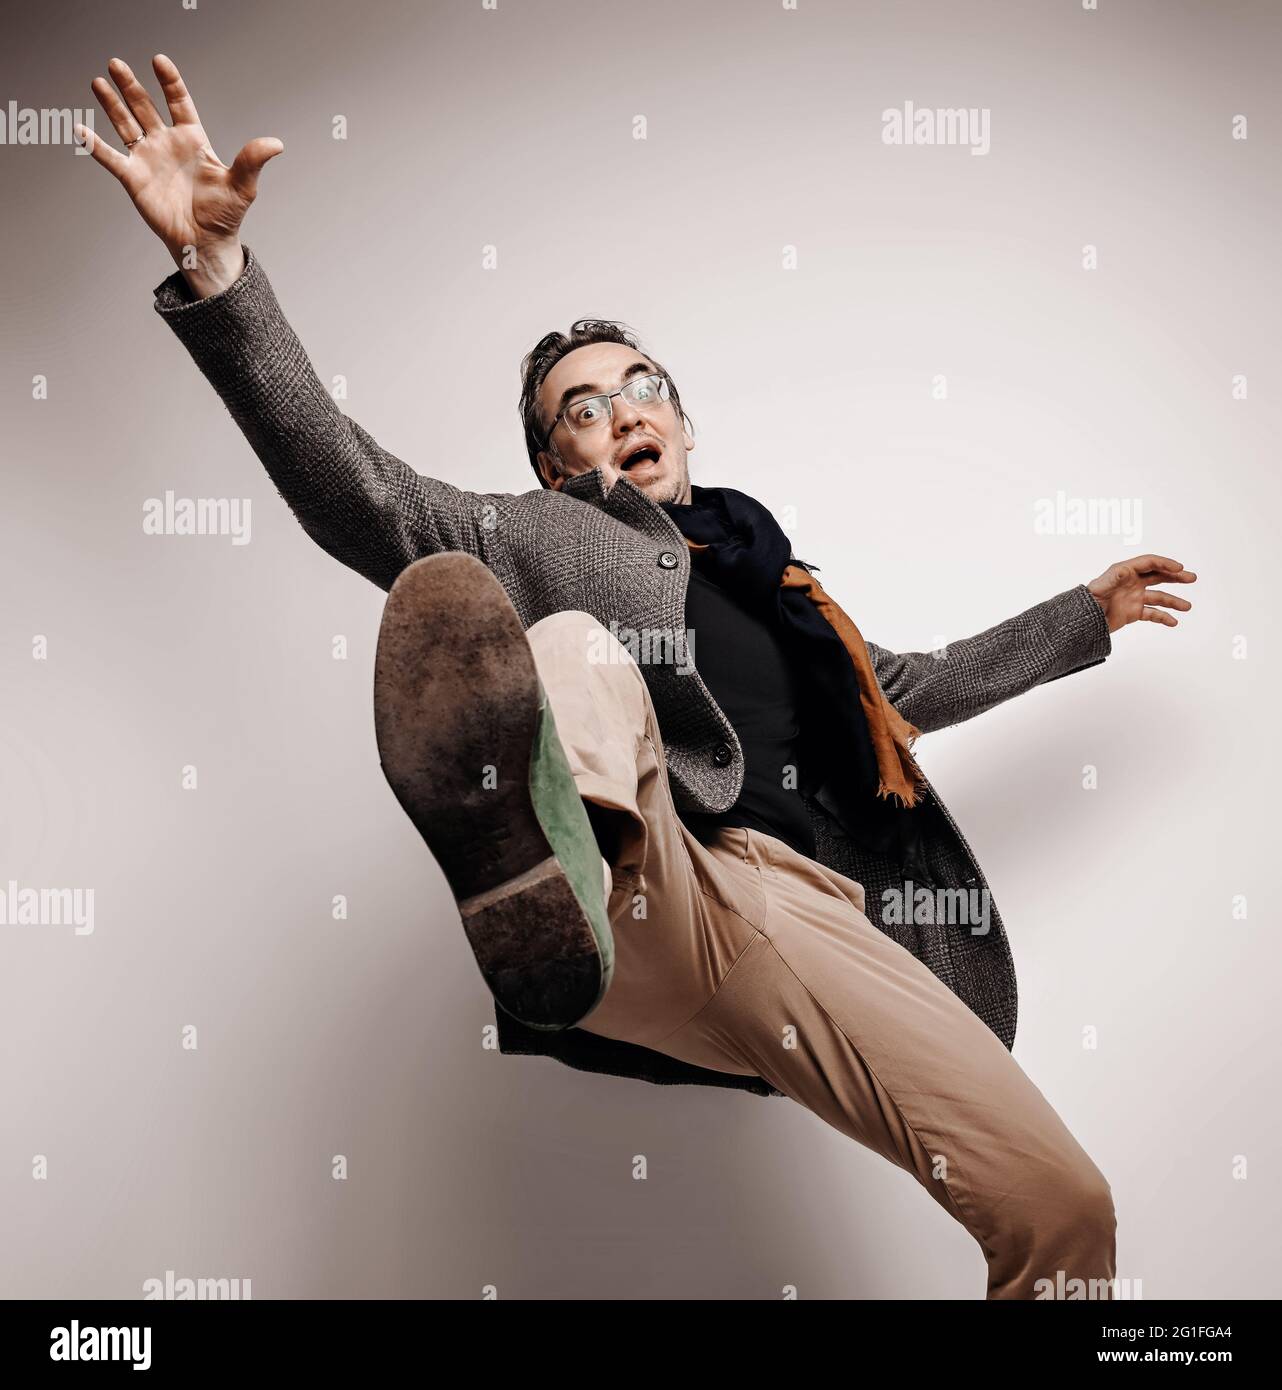 Uomo adulto stupefatto in pantaloni e giacca di plaid si alza il piede, facendo un passo gigante, cadendo giù le mani ondeggianti Foto Stock